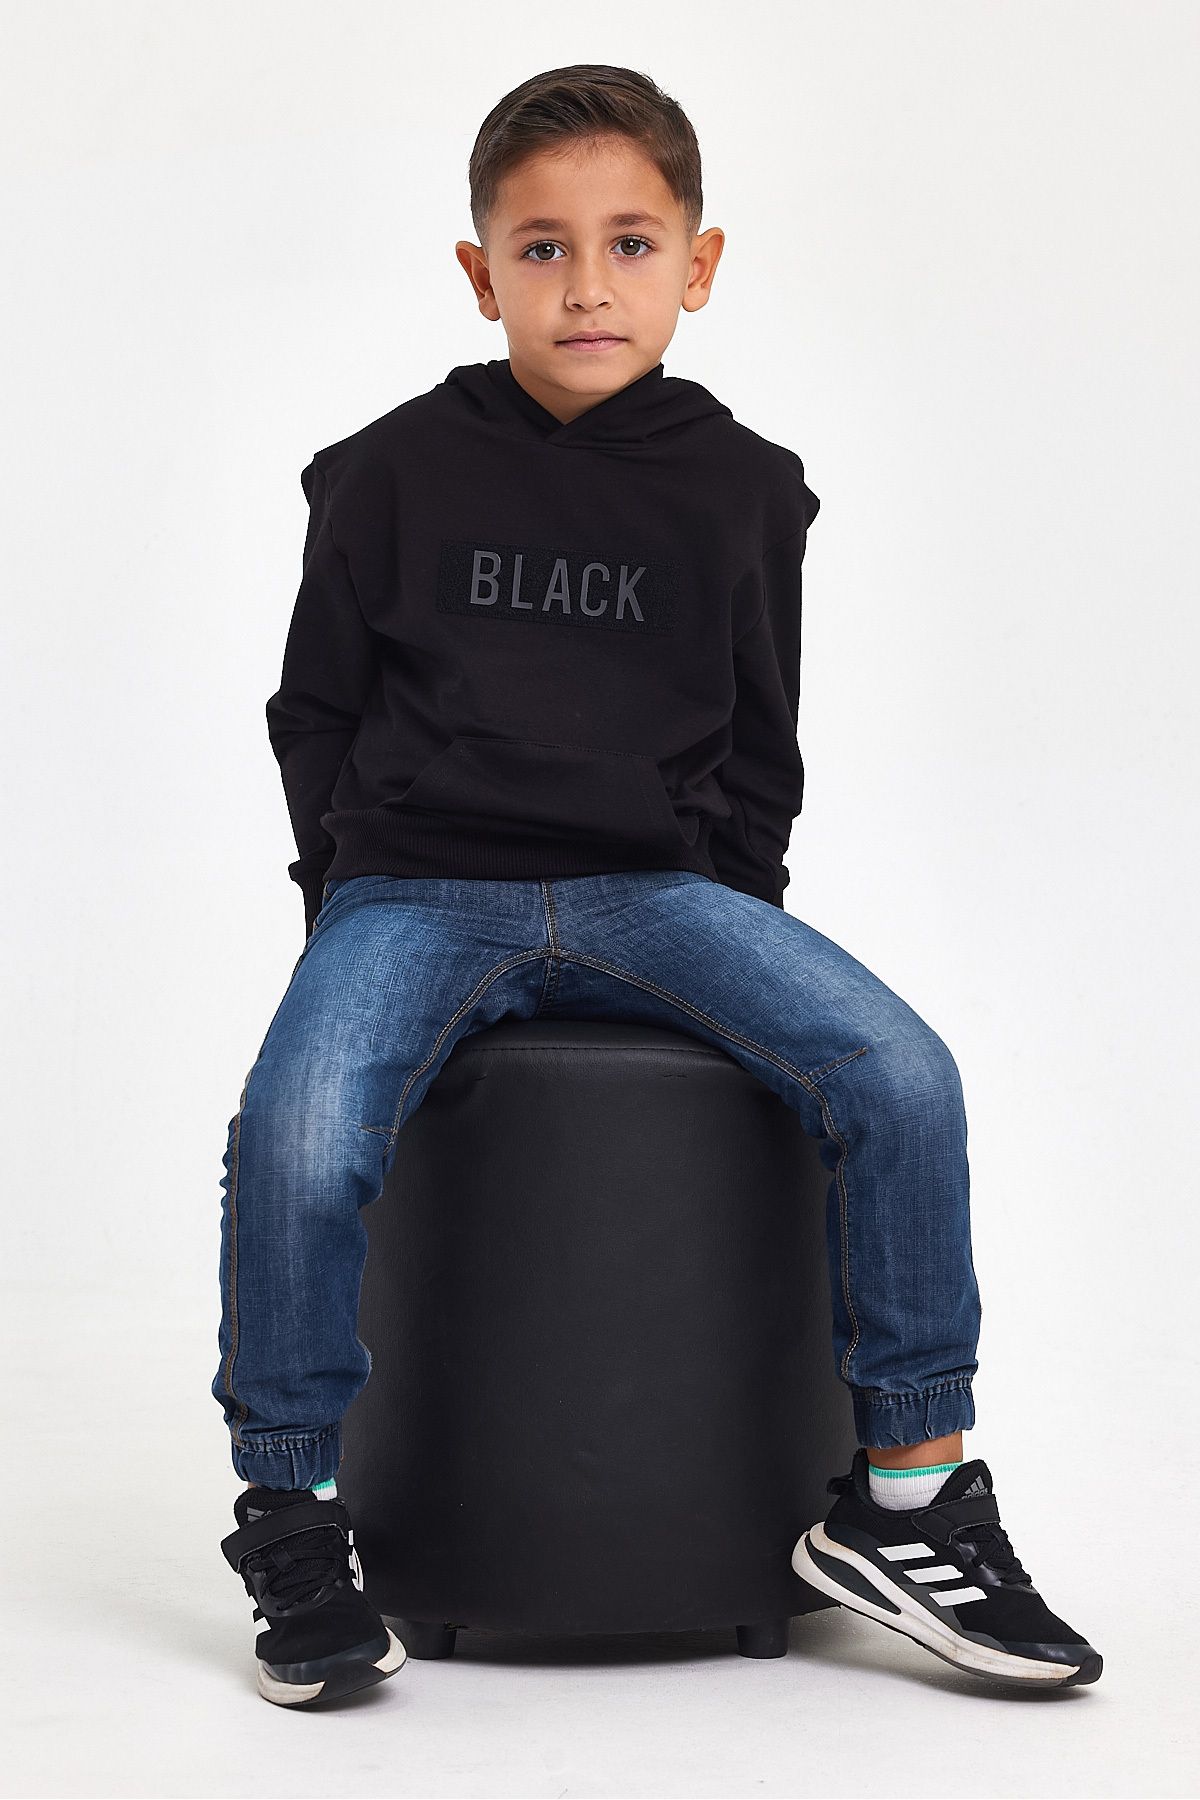 MRS CLOTHING Erkek Çocuk Sweatshirt 3d Baskılı %100 Pamuk Kışlık Siyah Kapüşonlu Oversize Hoodie